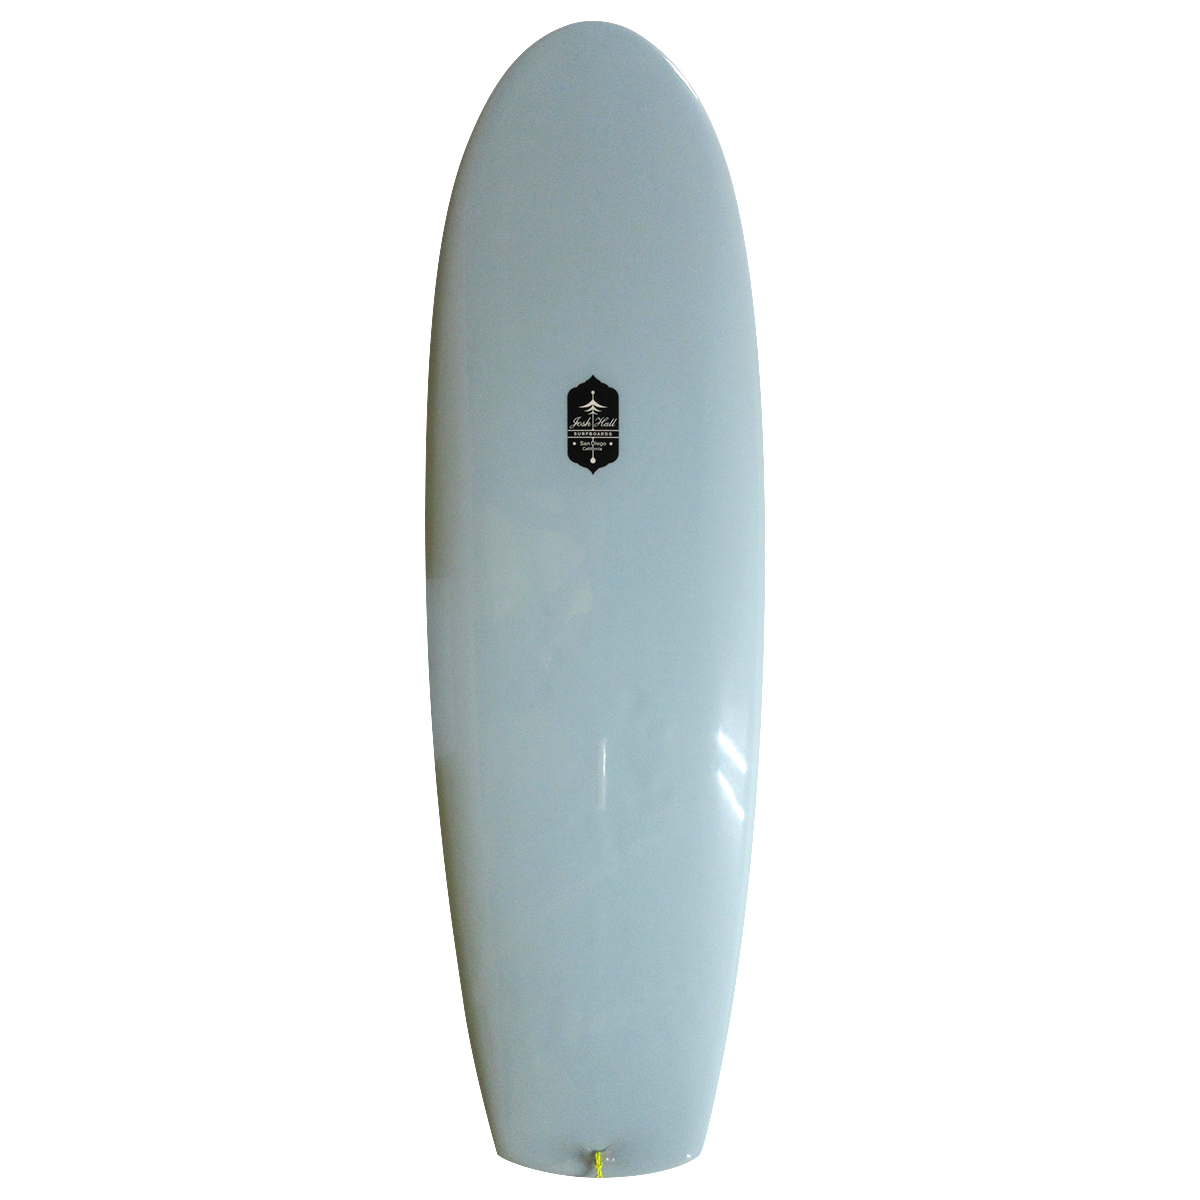 Josh Hall Surfboards / PESCADO HINCHADO VELO 6'0